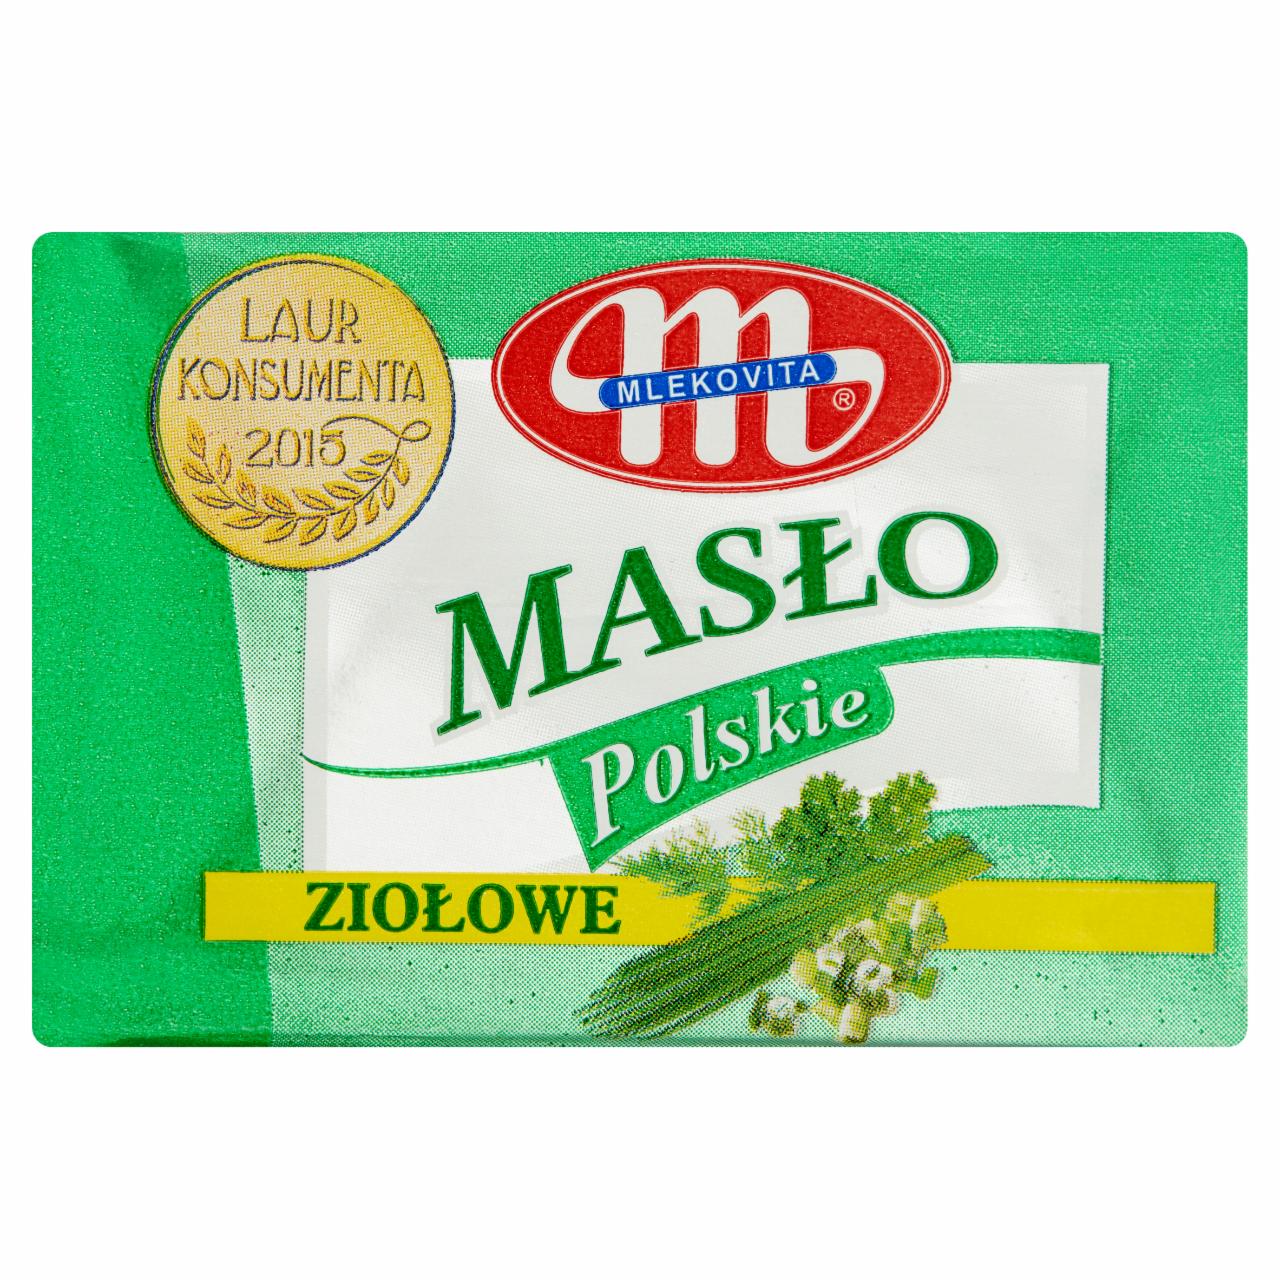 Zdjęcia - Mlekovita Masło Polskie ziołowe 100 g